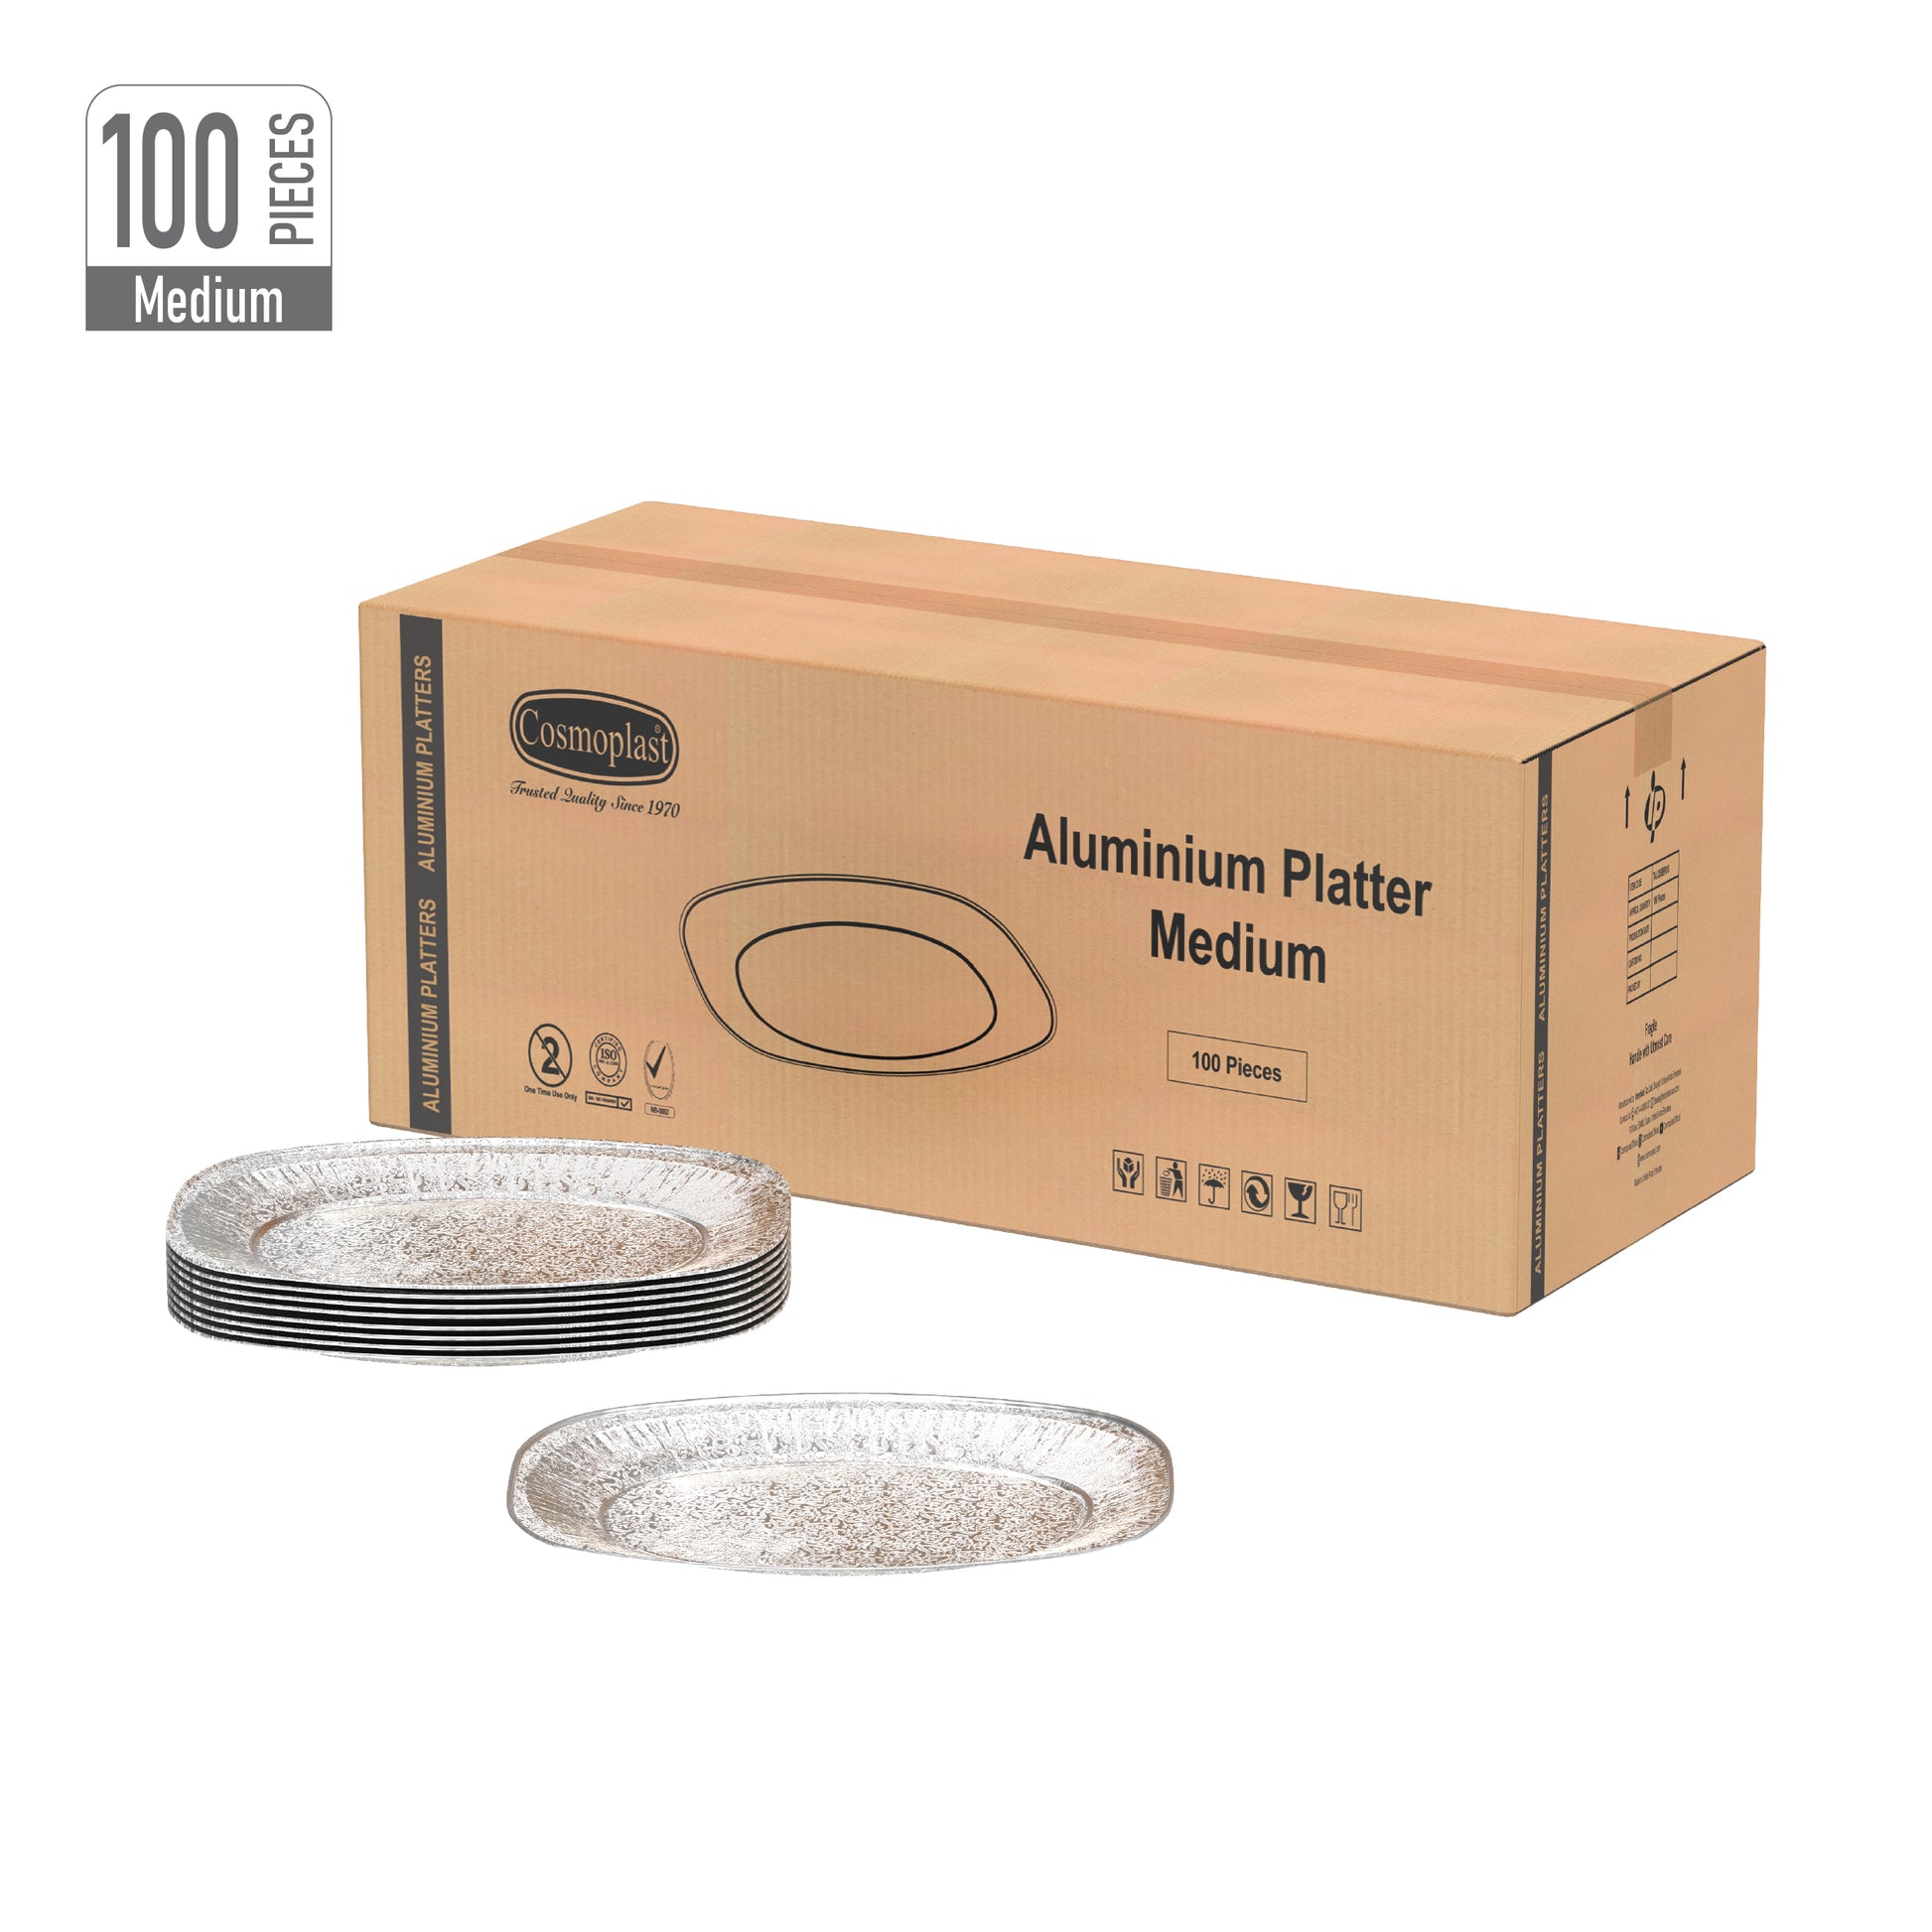 Medium Aluminium Platter Carton of 100